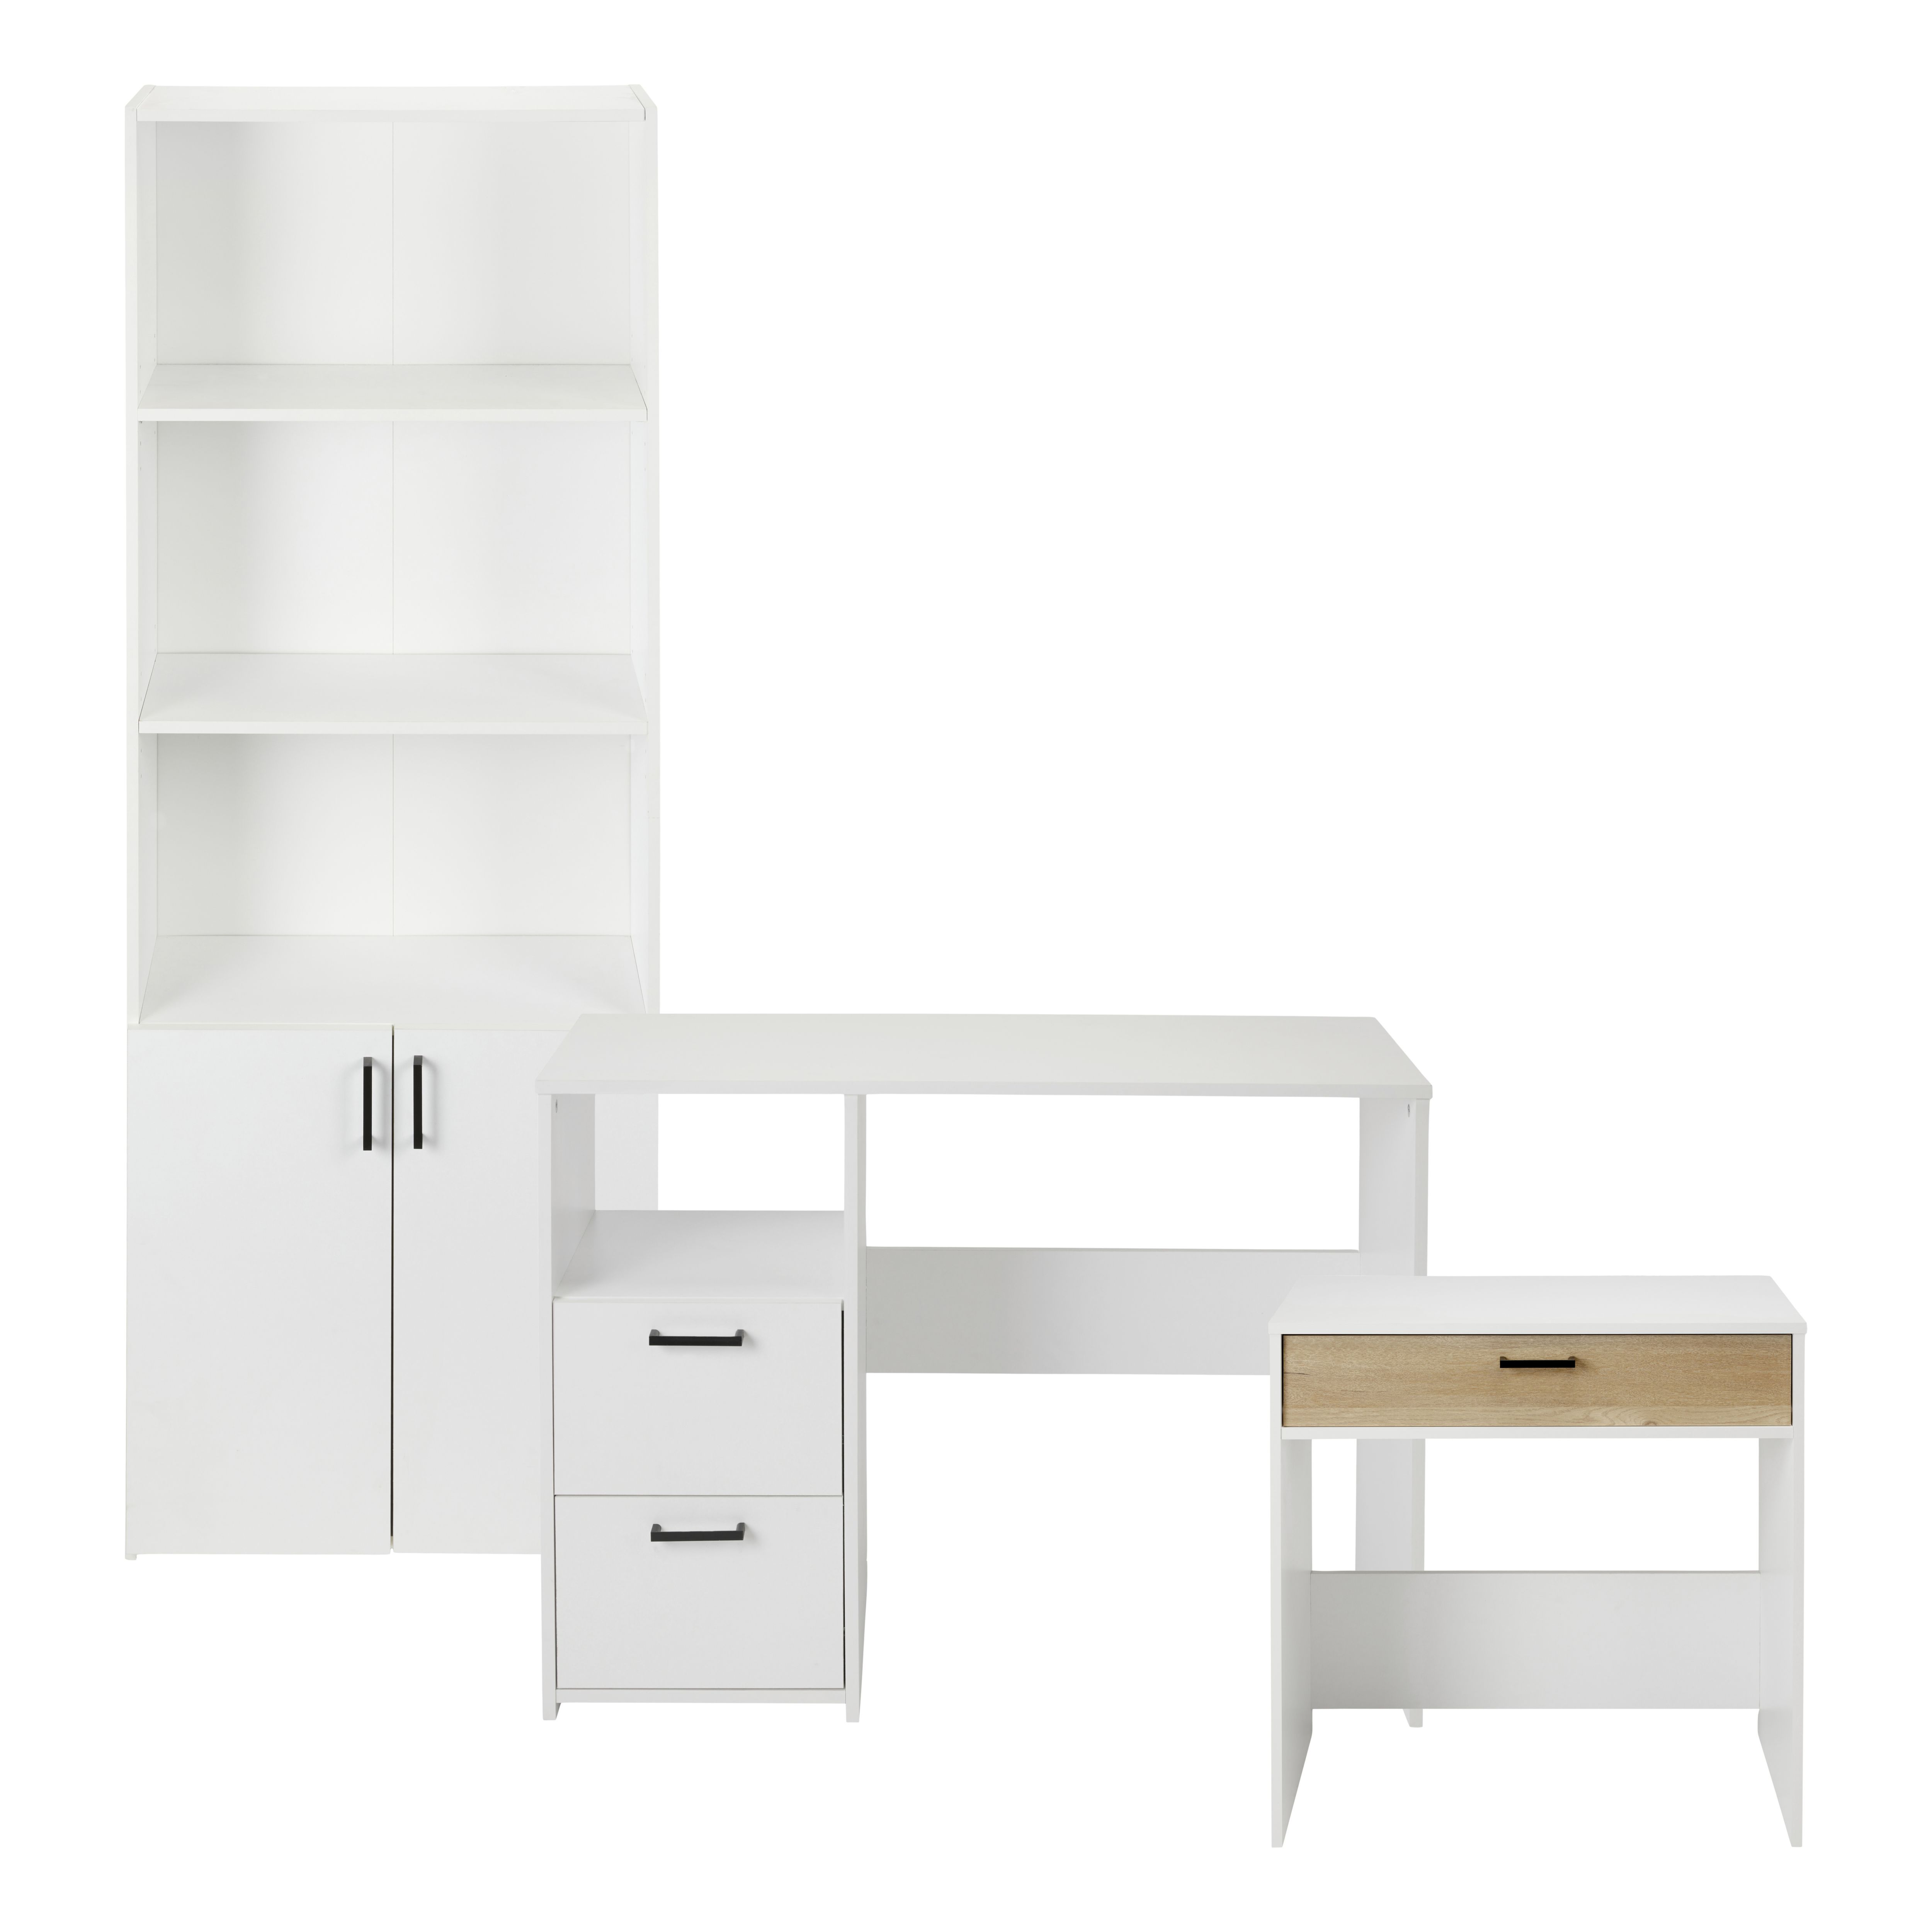 Penwith Matt white 1 compartment 3 Shelf Freestanding Rectangular Bookcase (H)1800mm (W)662mm (D)257mm